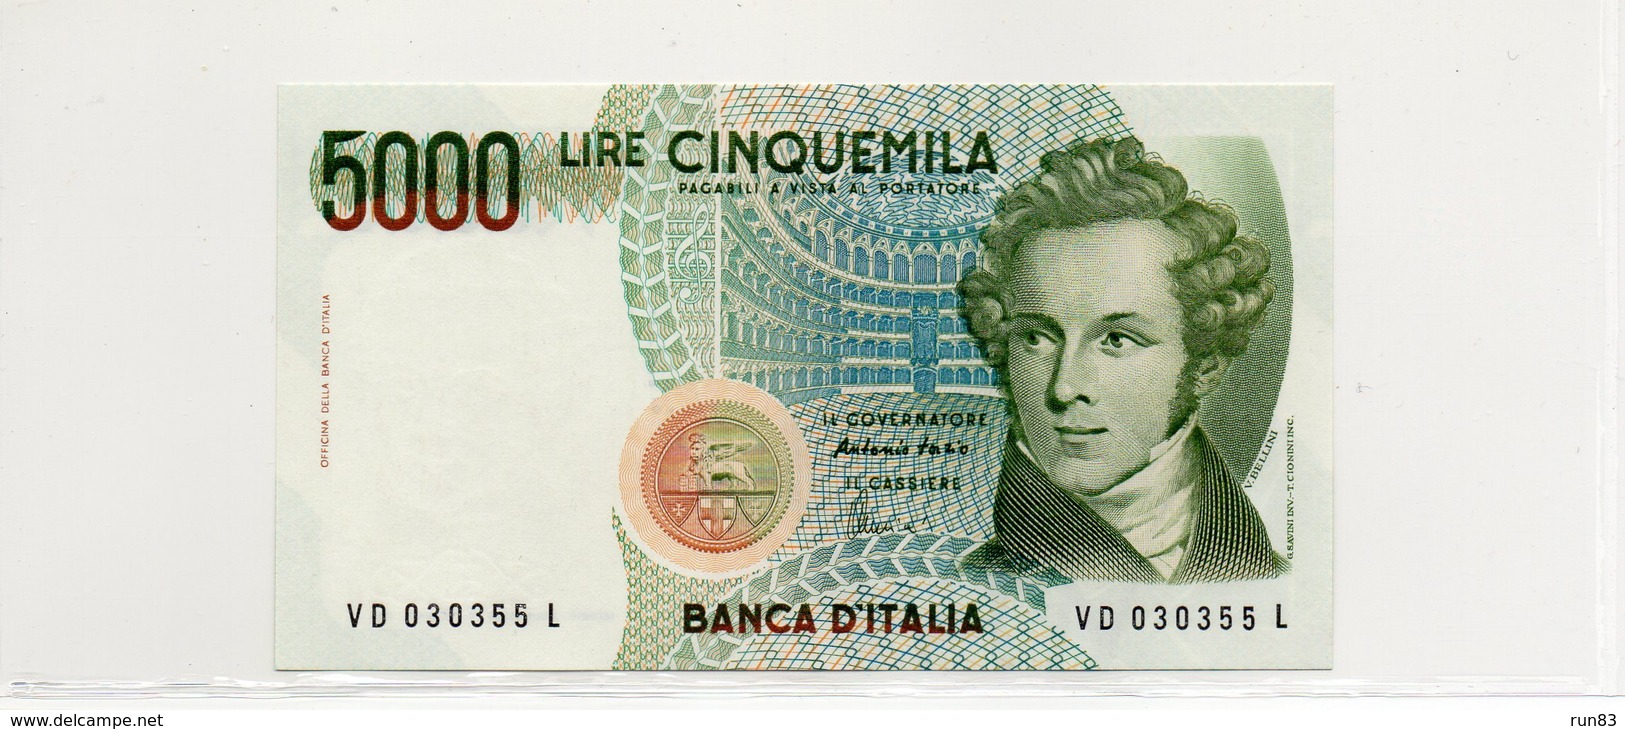 ITALIE / Superbe Biilet De Banque UNC Du 04 01 1985 N° 111 Paper Monney - [ 9] Colecciones